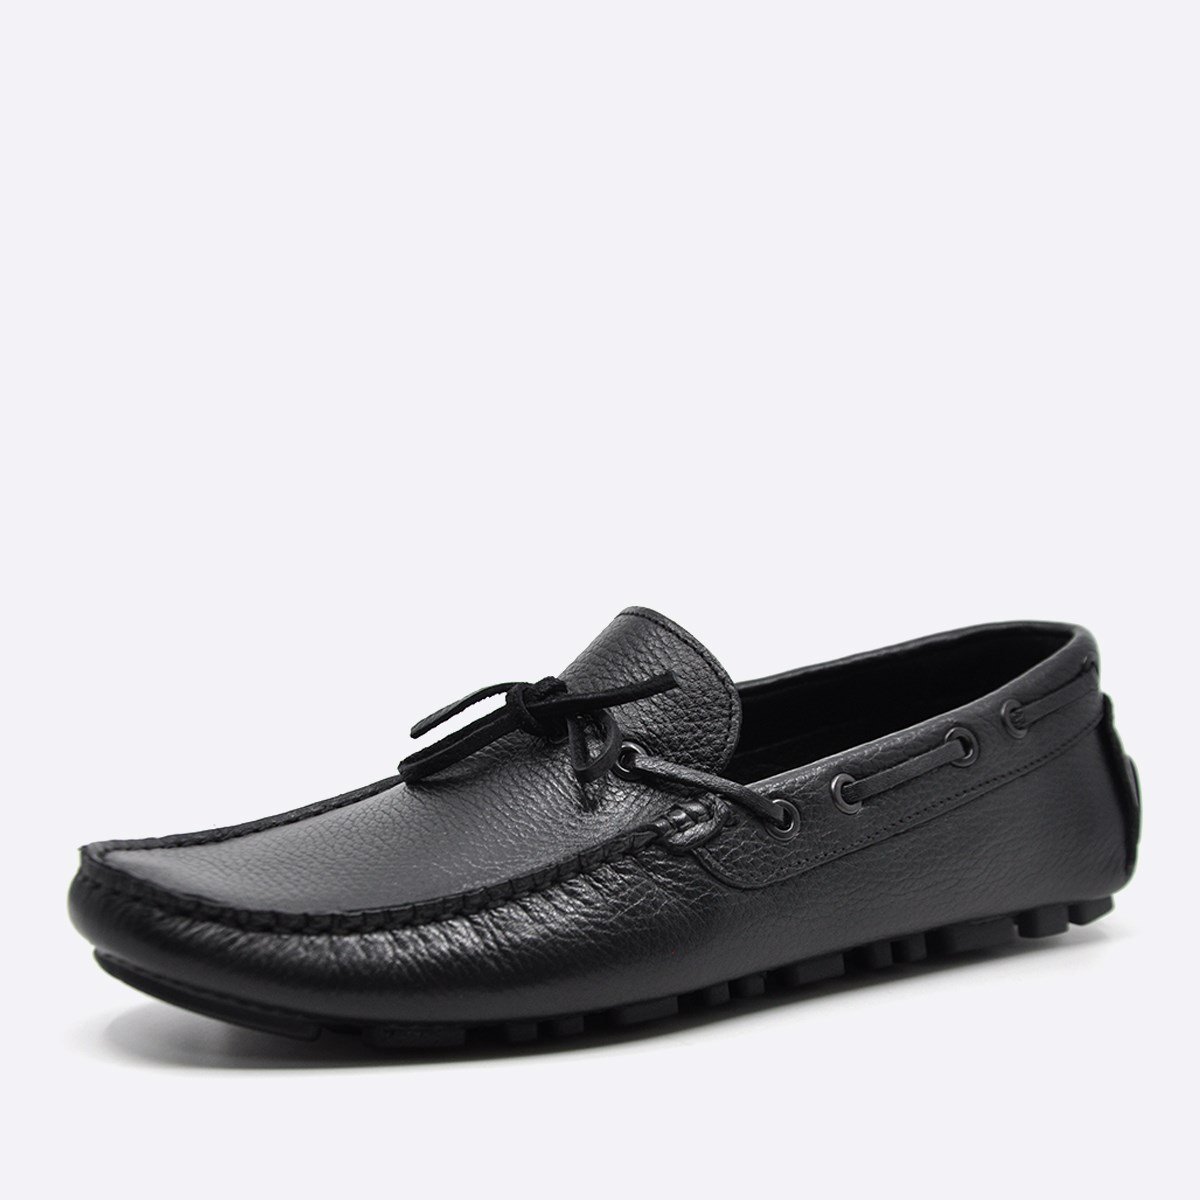 Fosco Hakiki Deri Siyah Flotter Yazlık Loafer Erkek Ayakkabı 9845